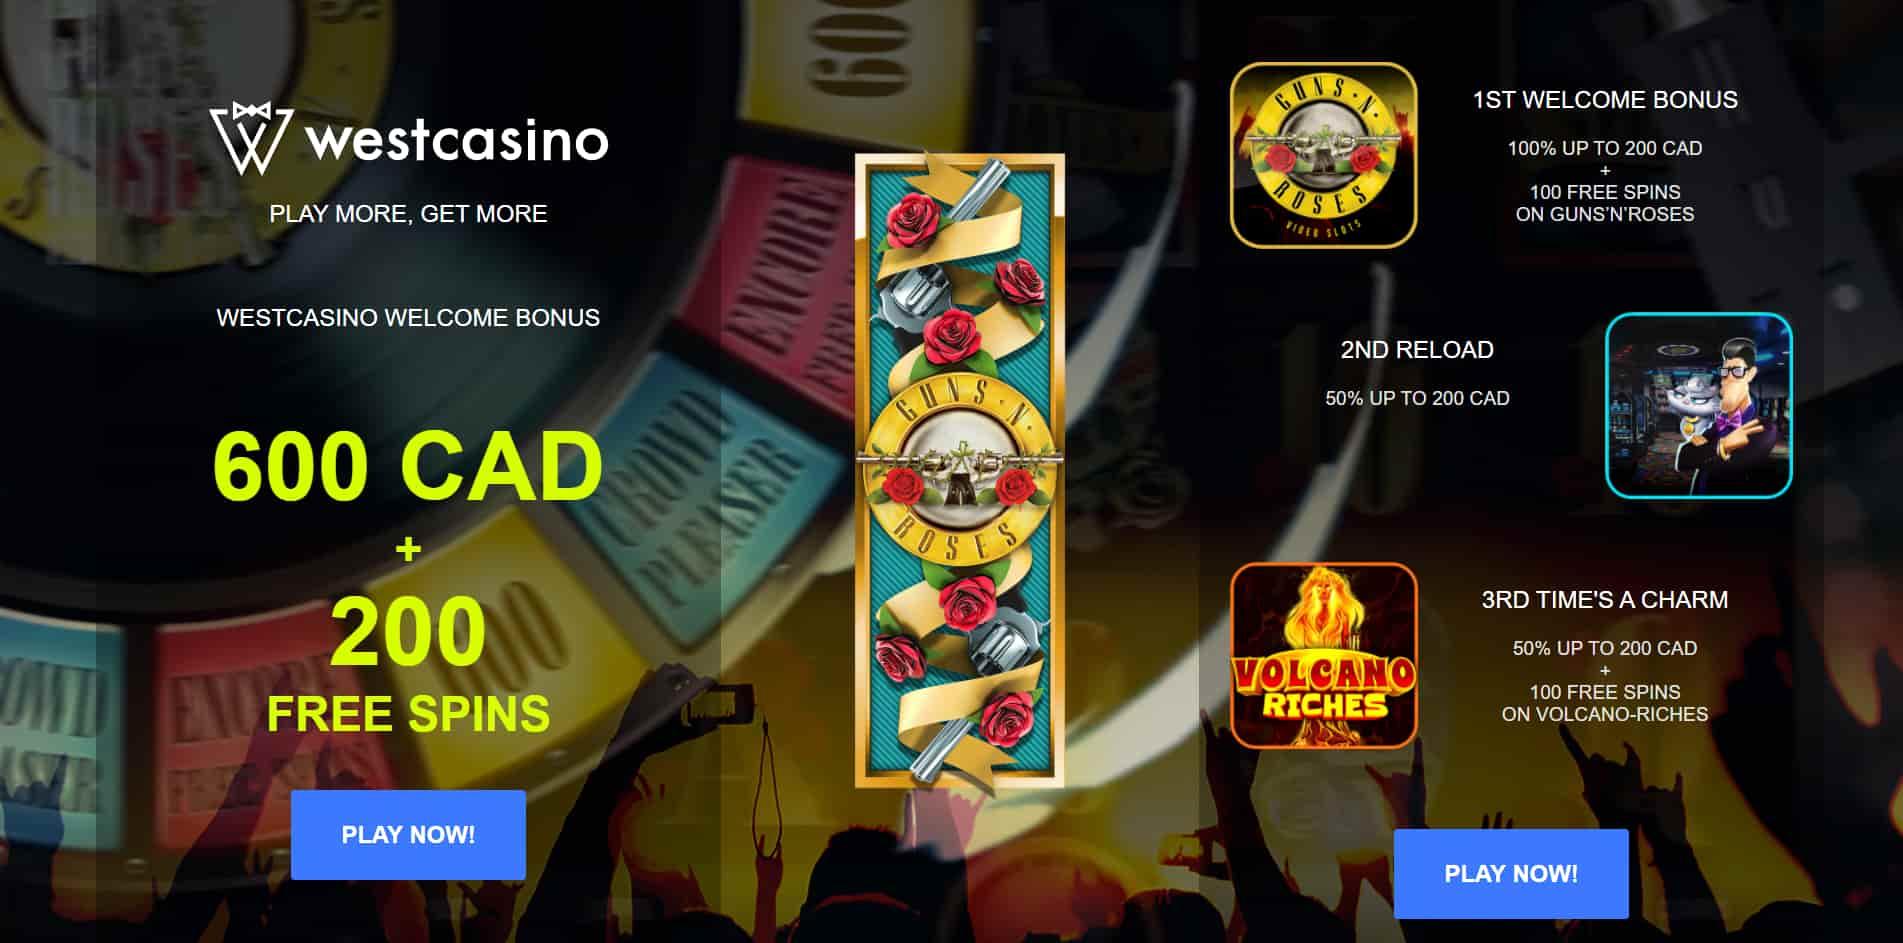 WestCasino casino homepage